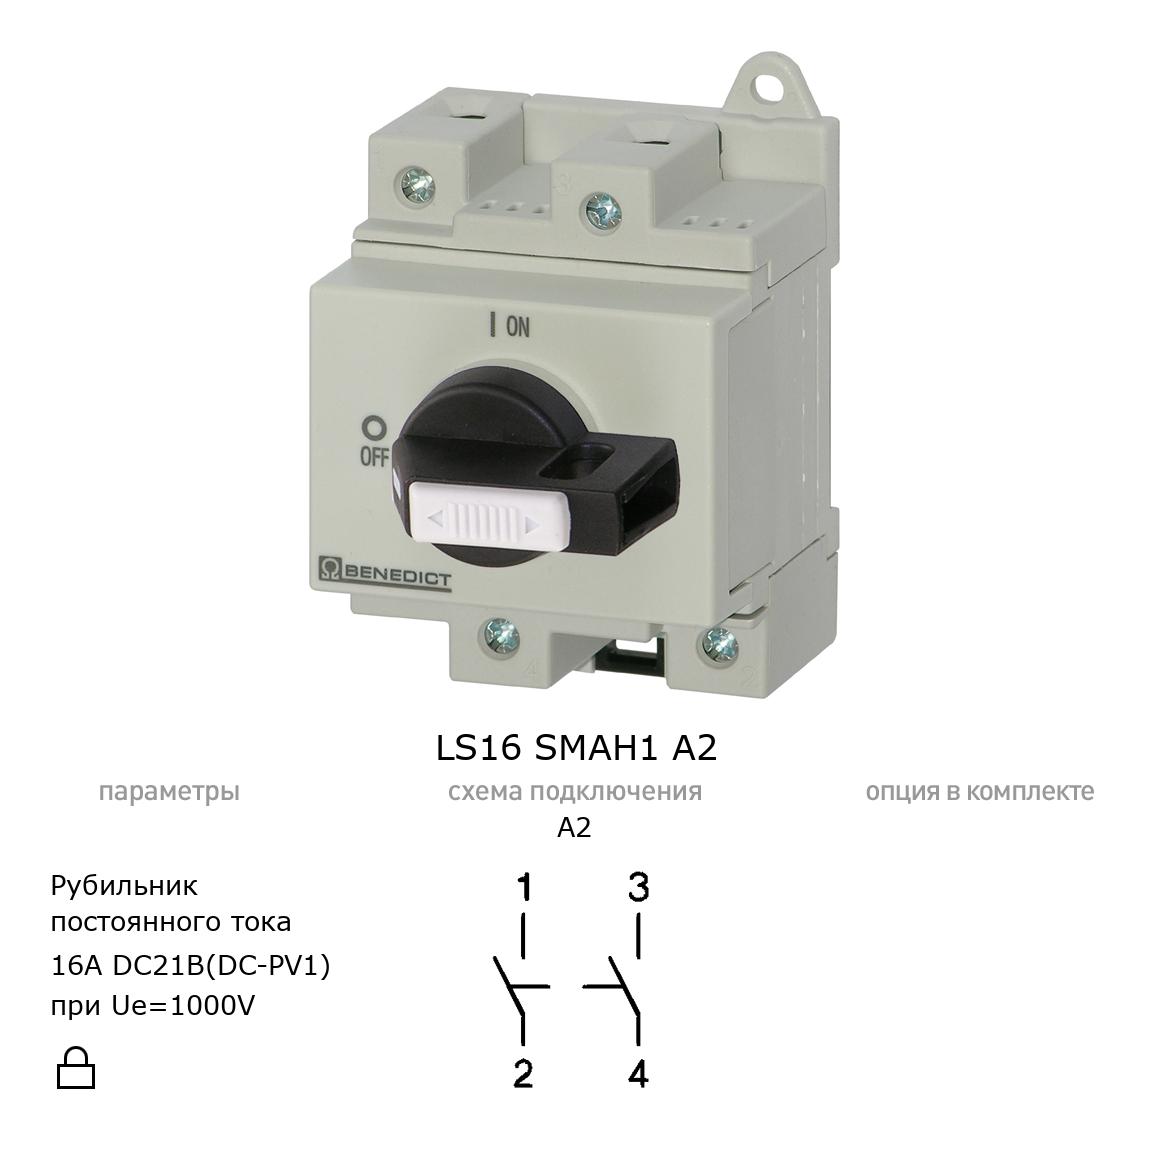 Выключатель нагрузки / рубильник для постоянного тока (DC) LS16 SMAH1 A2 BENEDICT